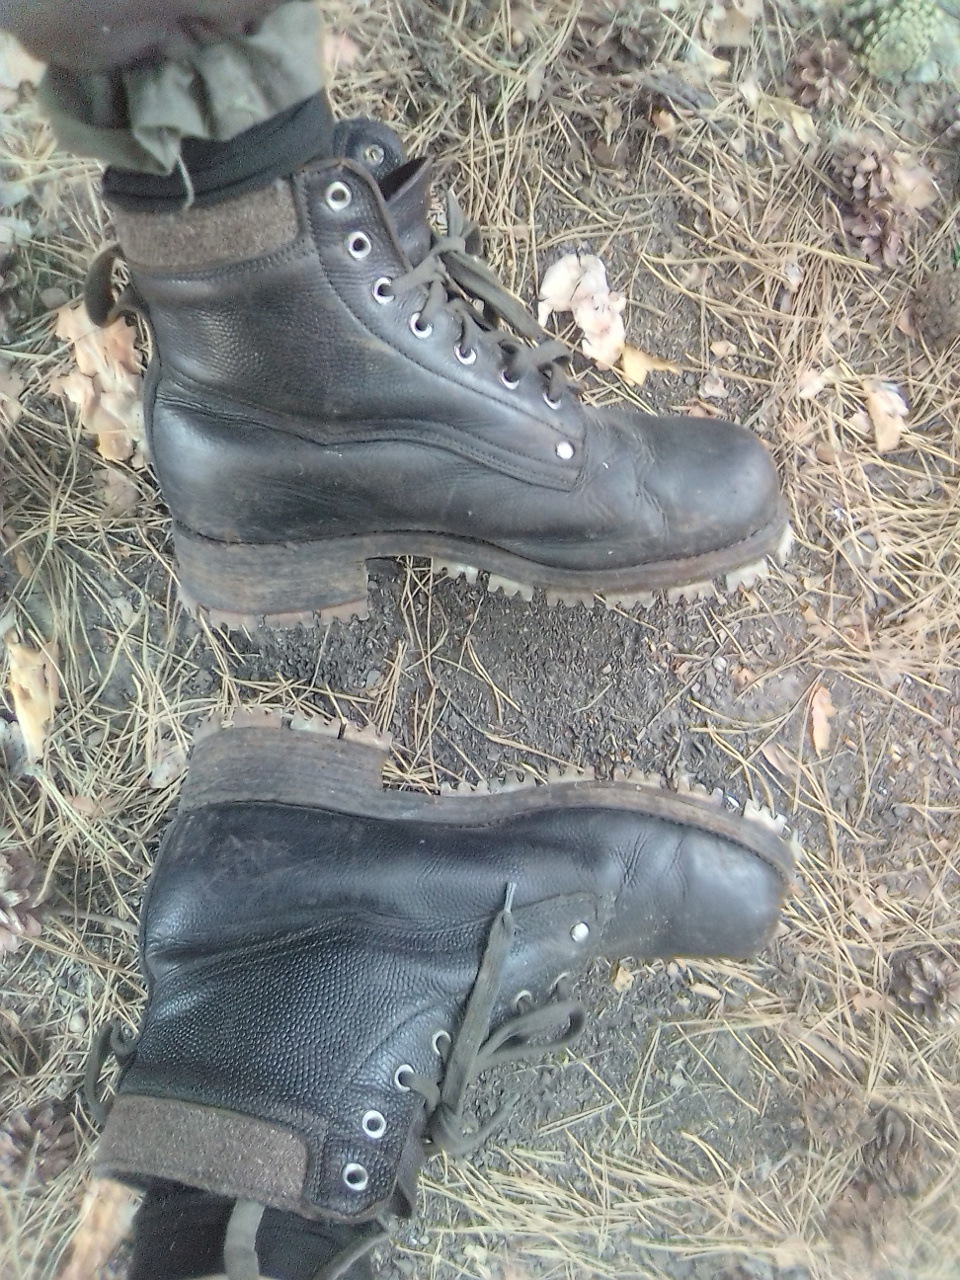 boots1.jpg